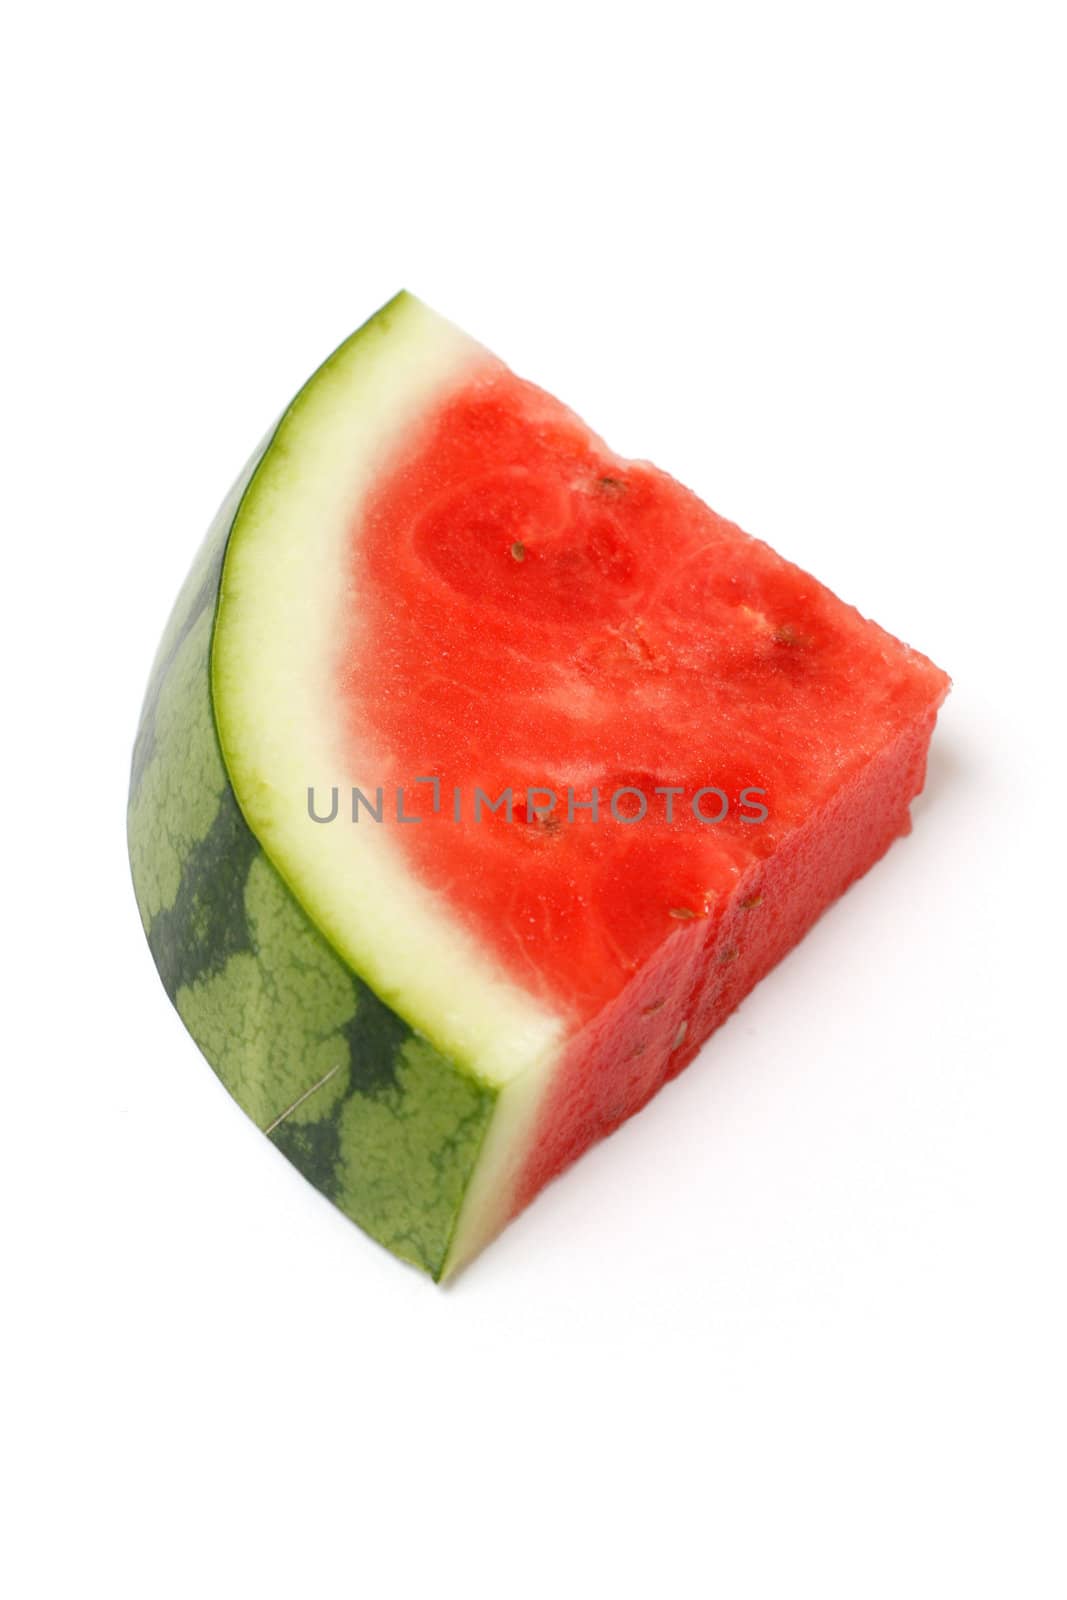 Water melon slice by leeser